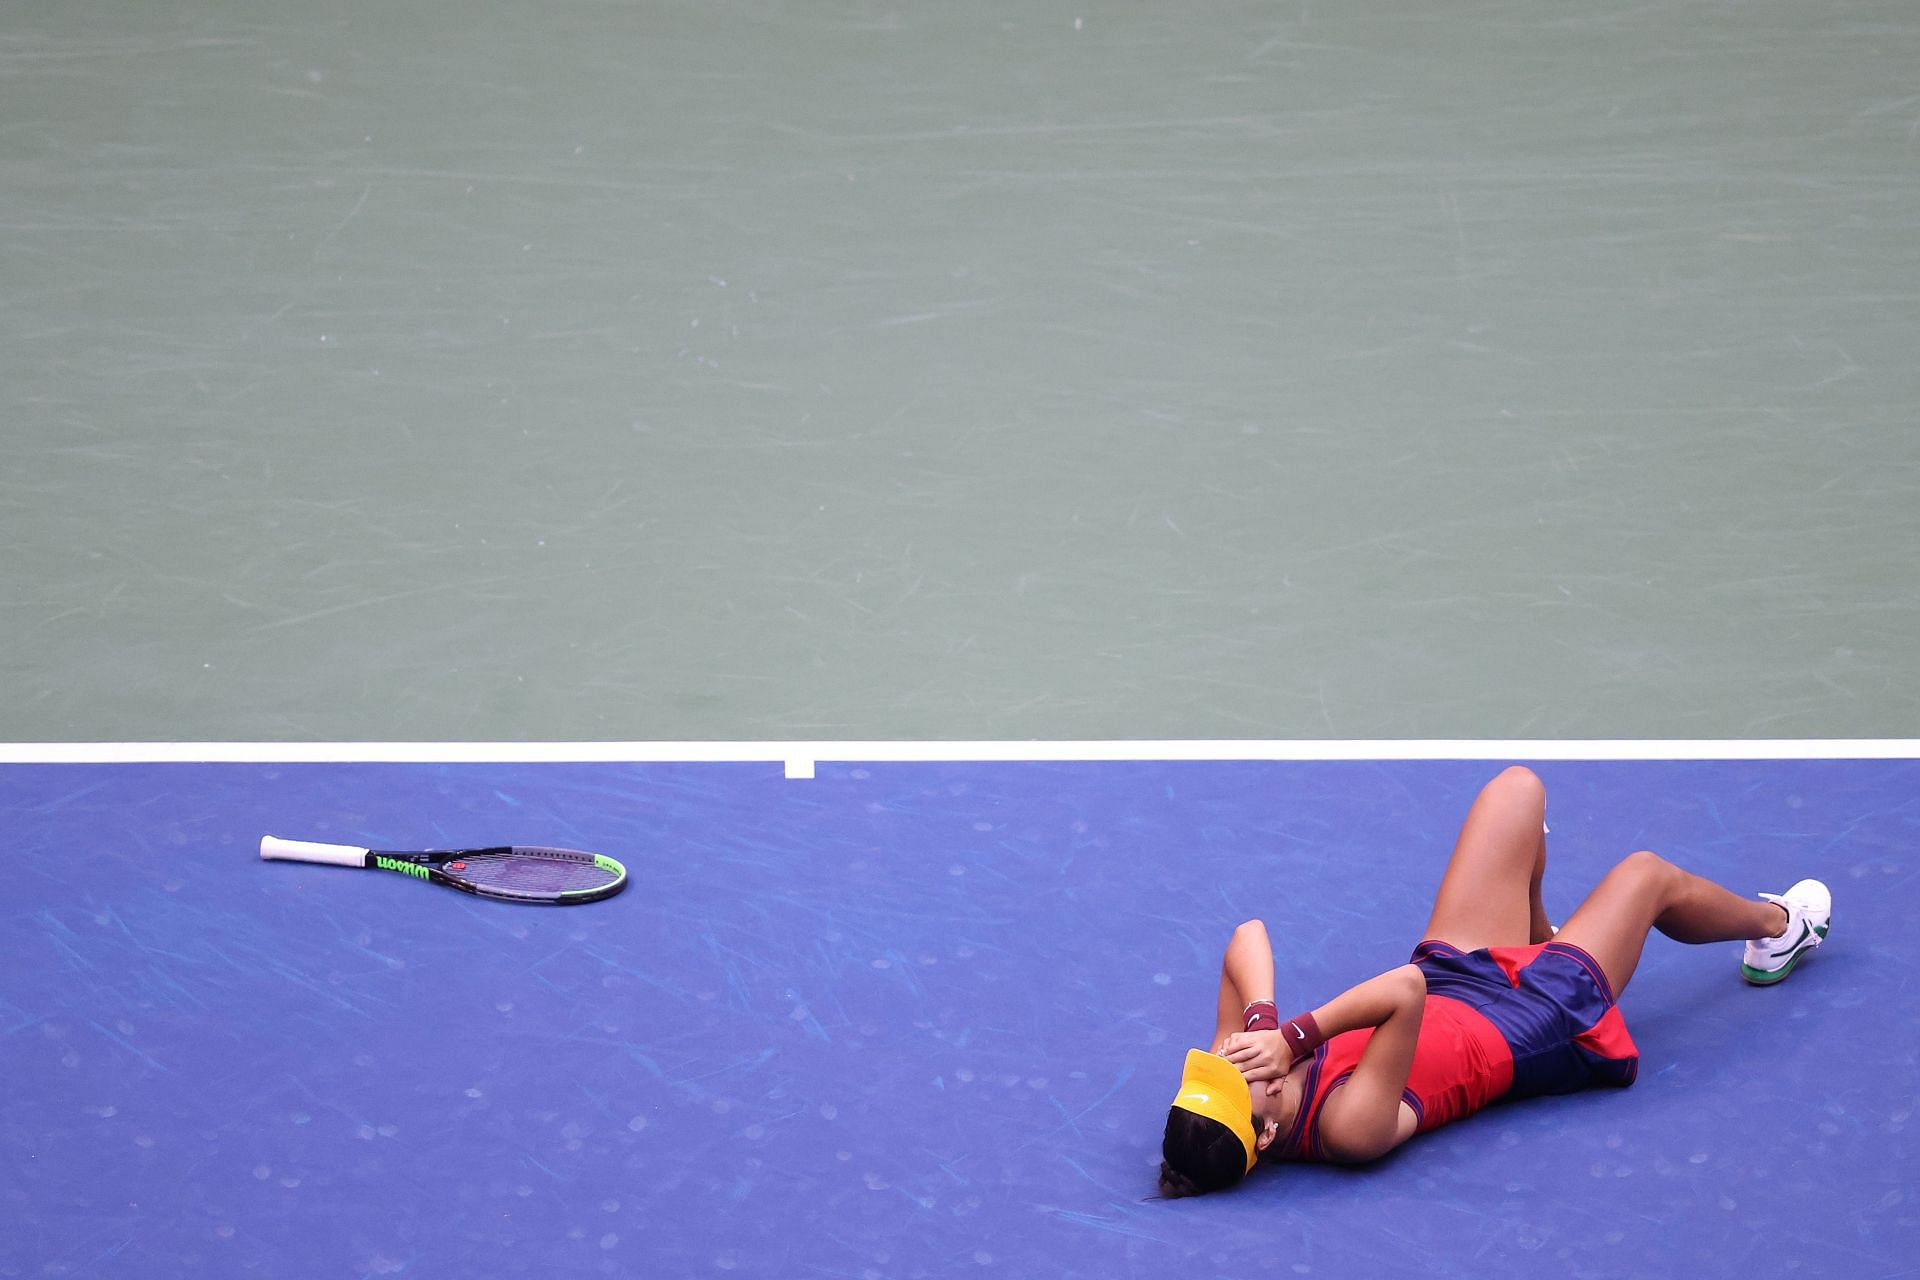 Emma Raducanu in shock after her 2021 US Open triumph.